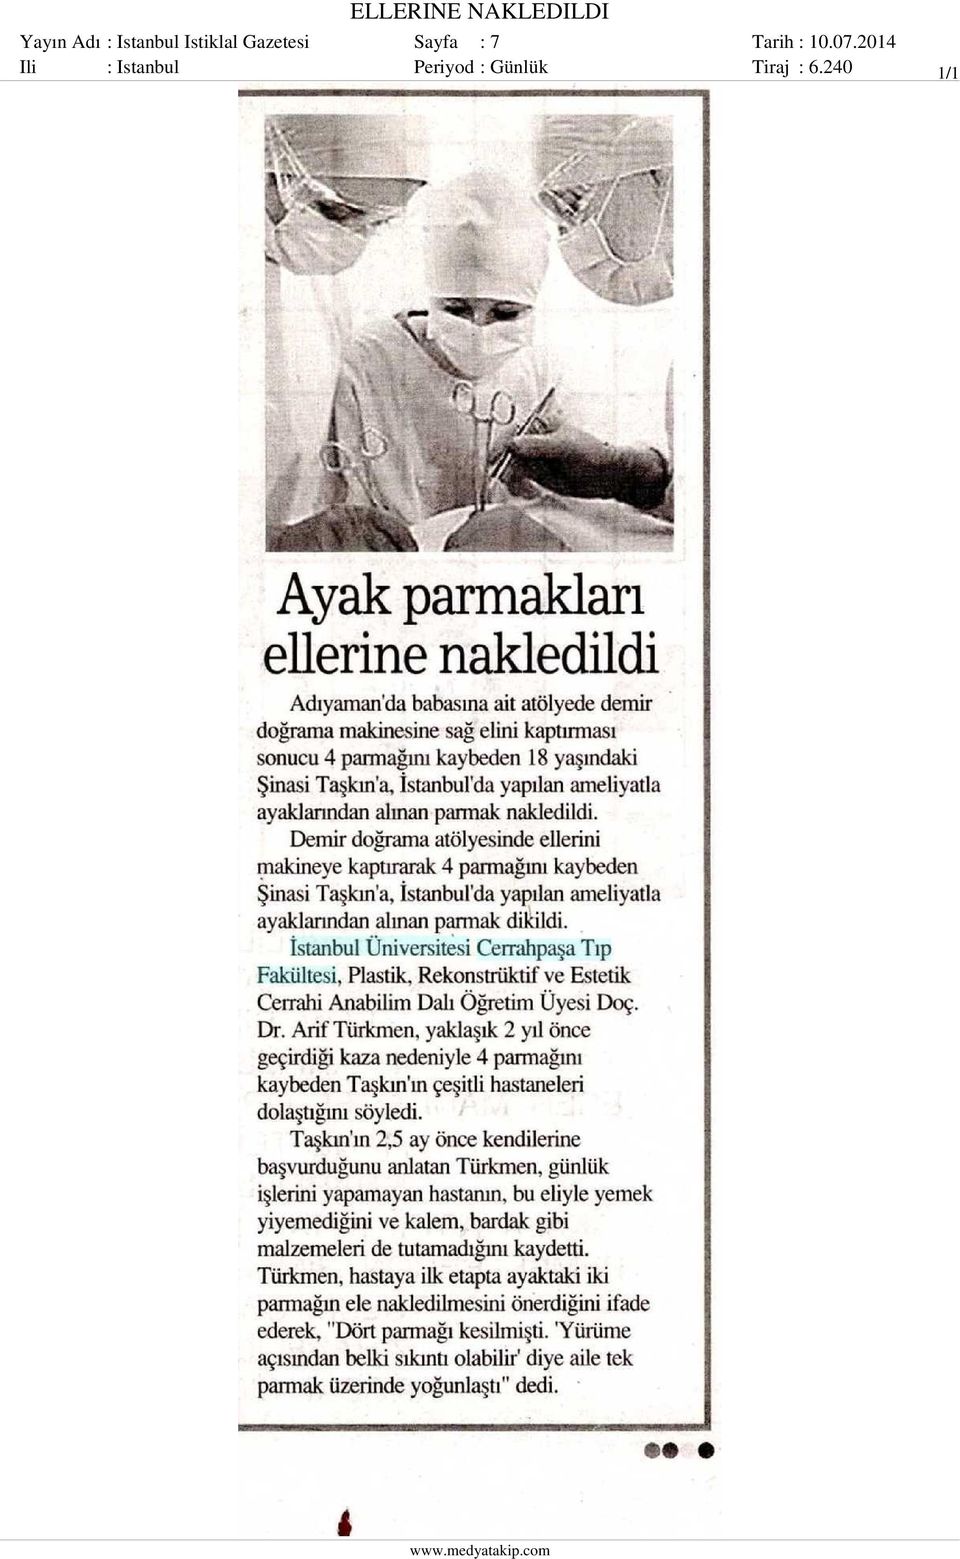 Sayfa : 7 Ili : Istanbul